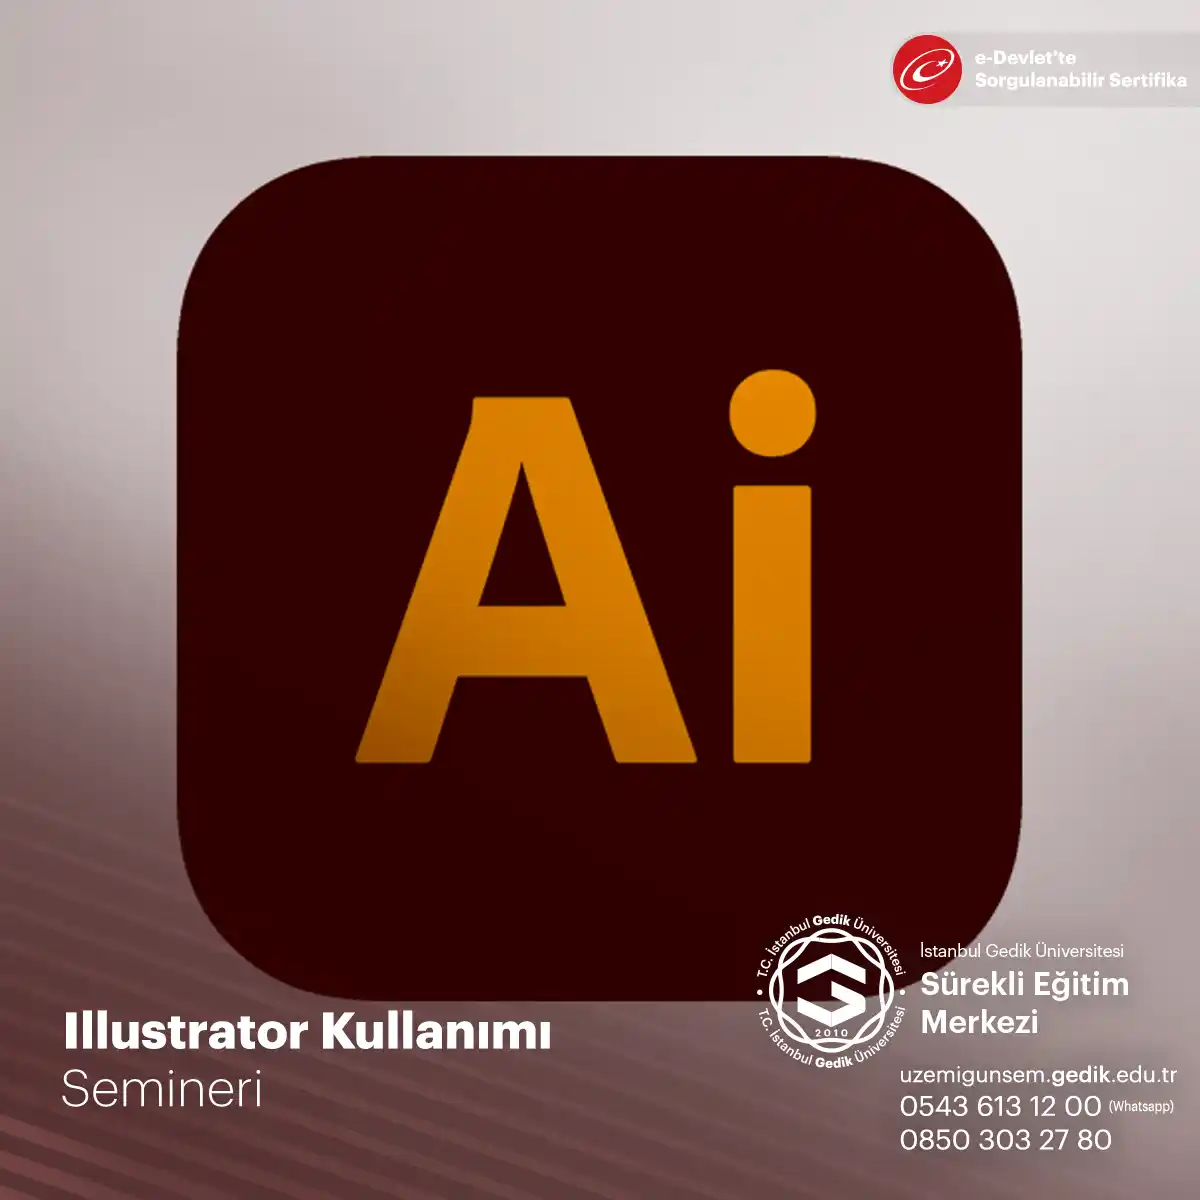 Illustrator, Adobe tarafından geliştirilen vektörel grafik tasarım yazılımıdır ve profesyonel tasarımcılar için yaygın olarak kullanılmaktadır.